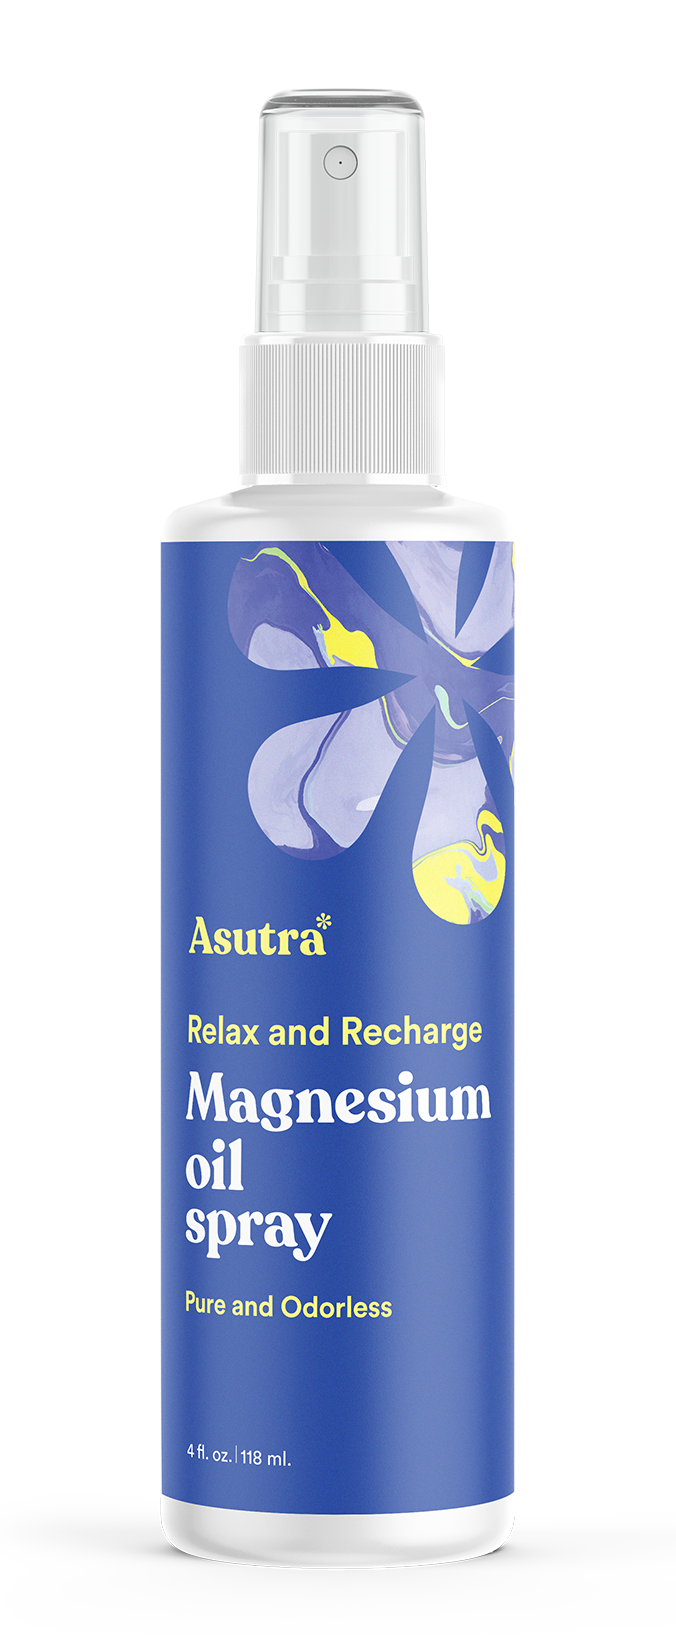 https://asutra.com/cdn/shop/products/asutra-magnesium-oil-v2-front_1640x1640.png?v=1655926210